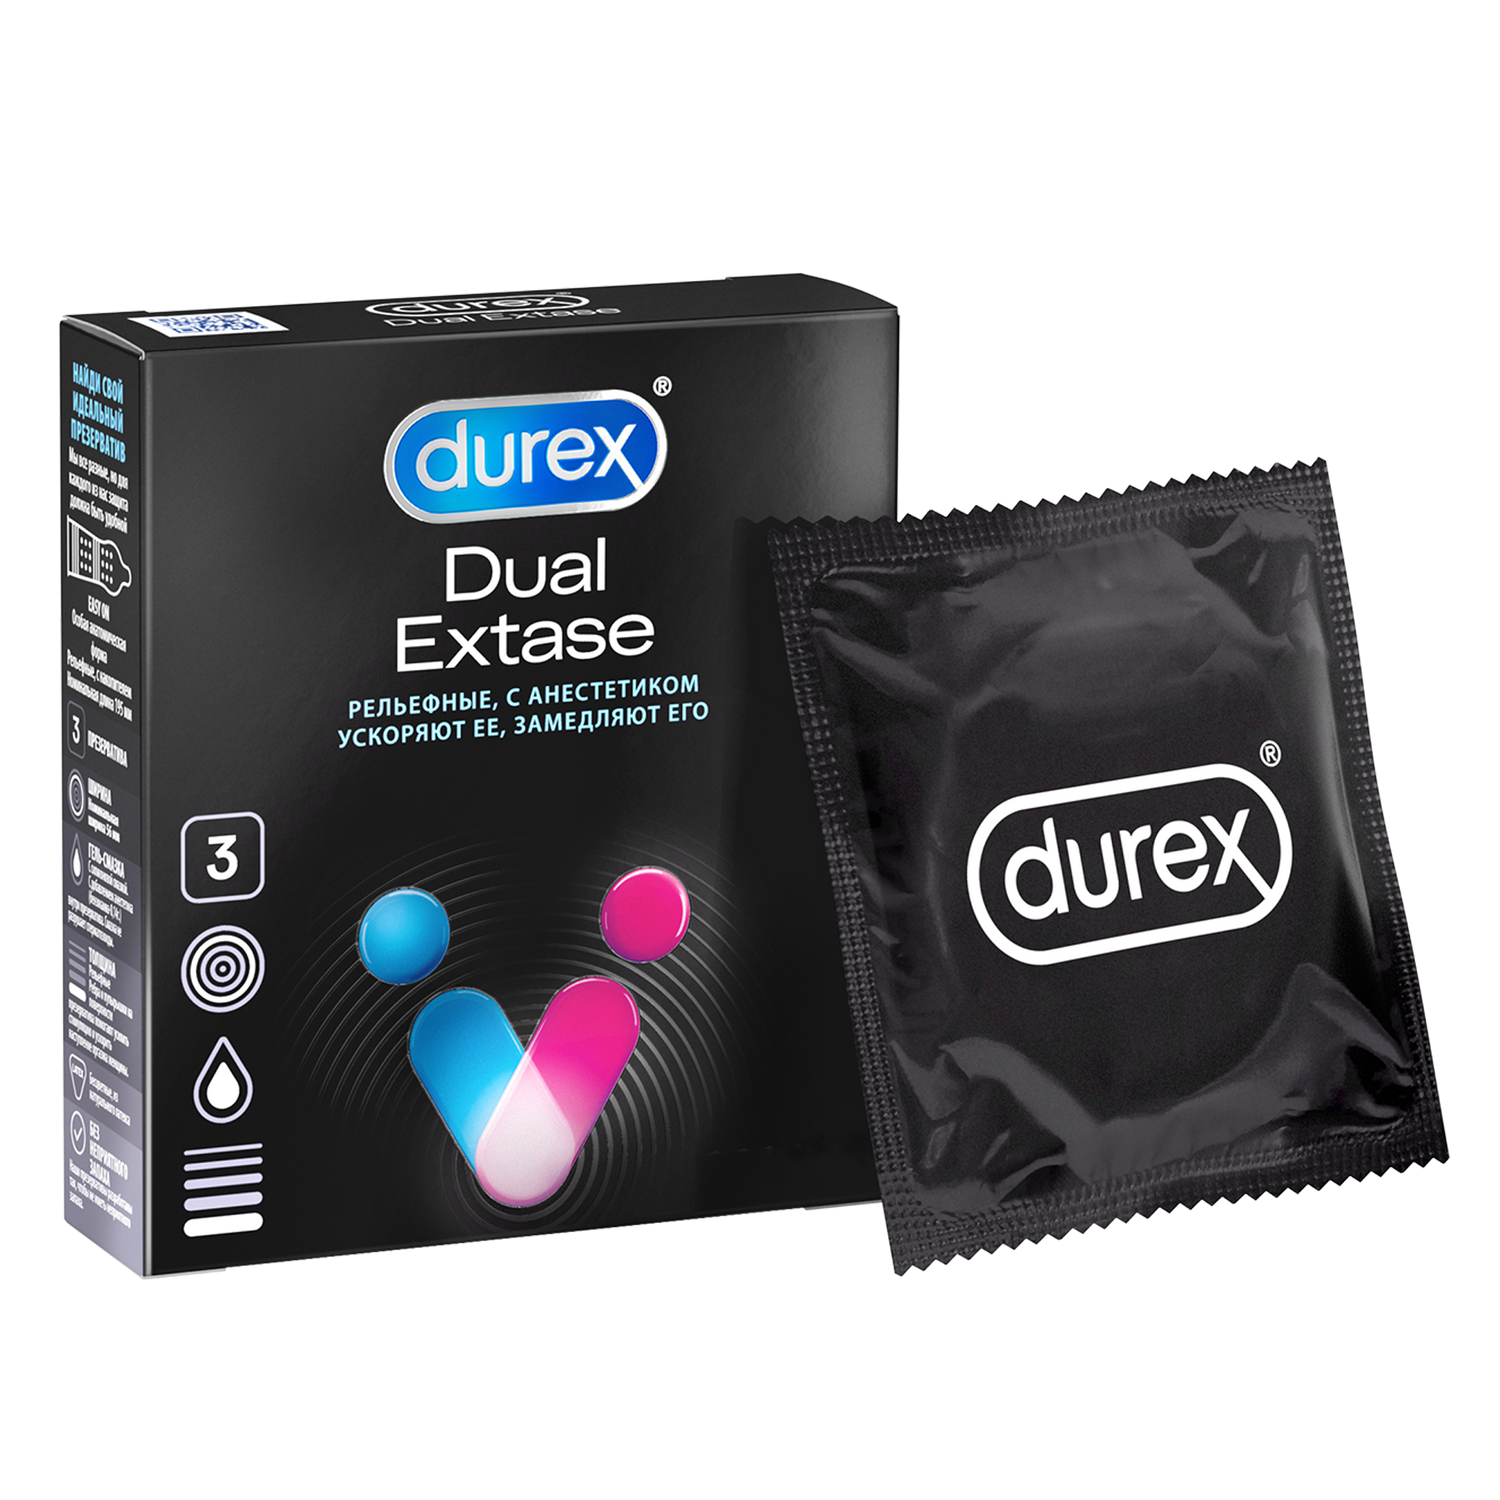 Презервативы Durex Dual Extase, рельефные с анестетиком, 3 шт. ганзо презервативы 12 экстаз